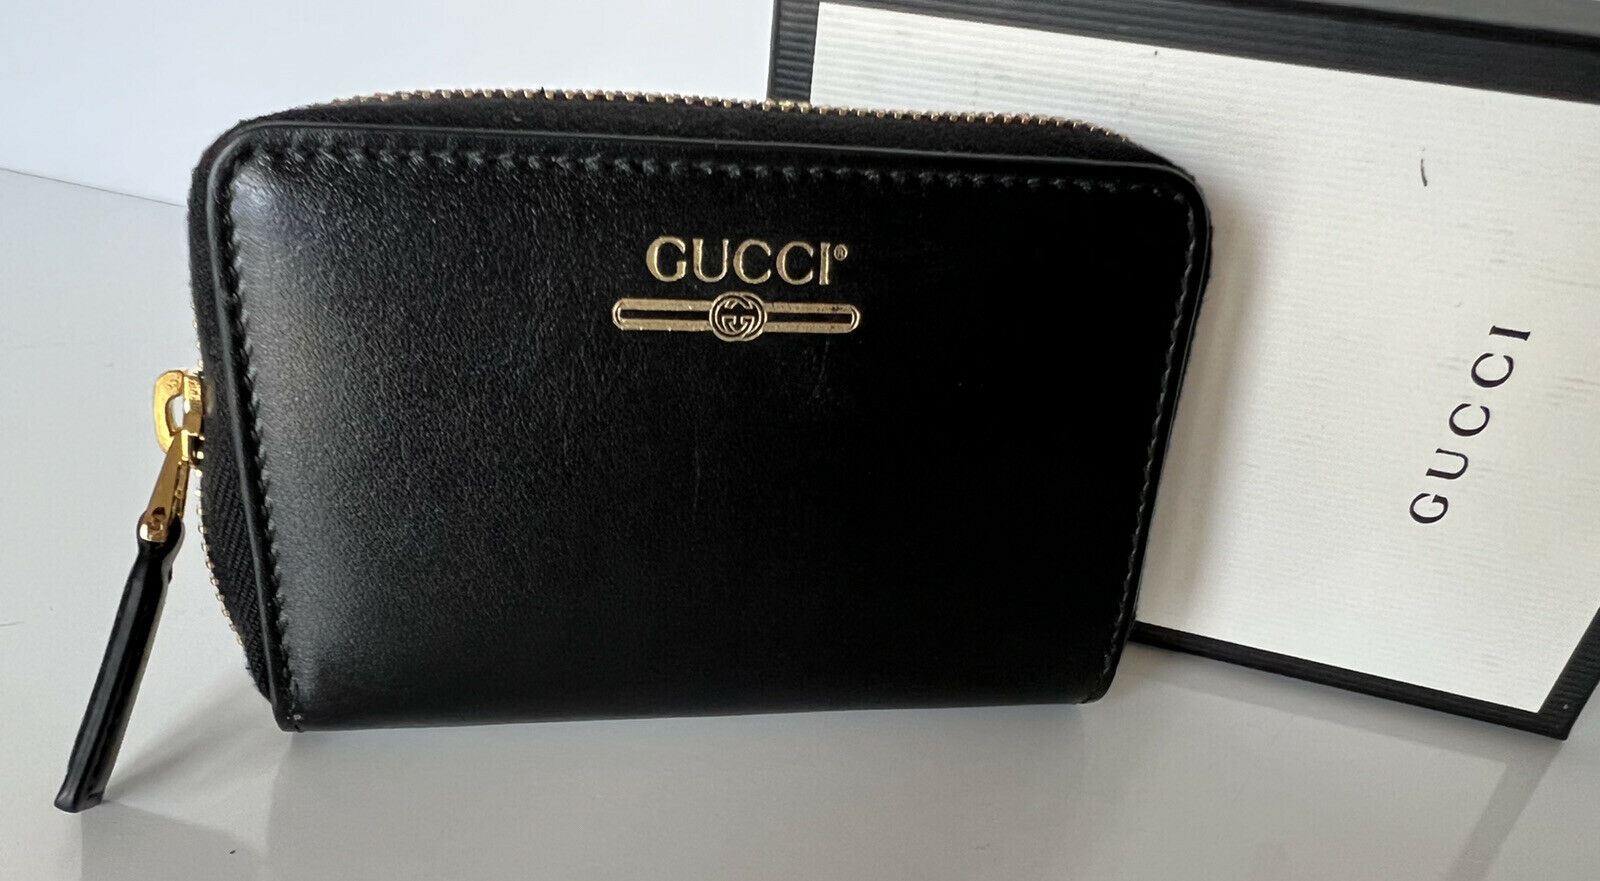 Neu mit Etikett: Gucci G Web Gucci Print Kartenetui mit umlaufendem Reißverschluss, hergestellt in Italien, 547597 